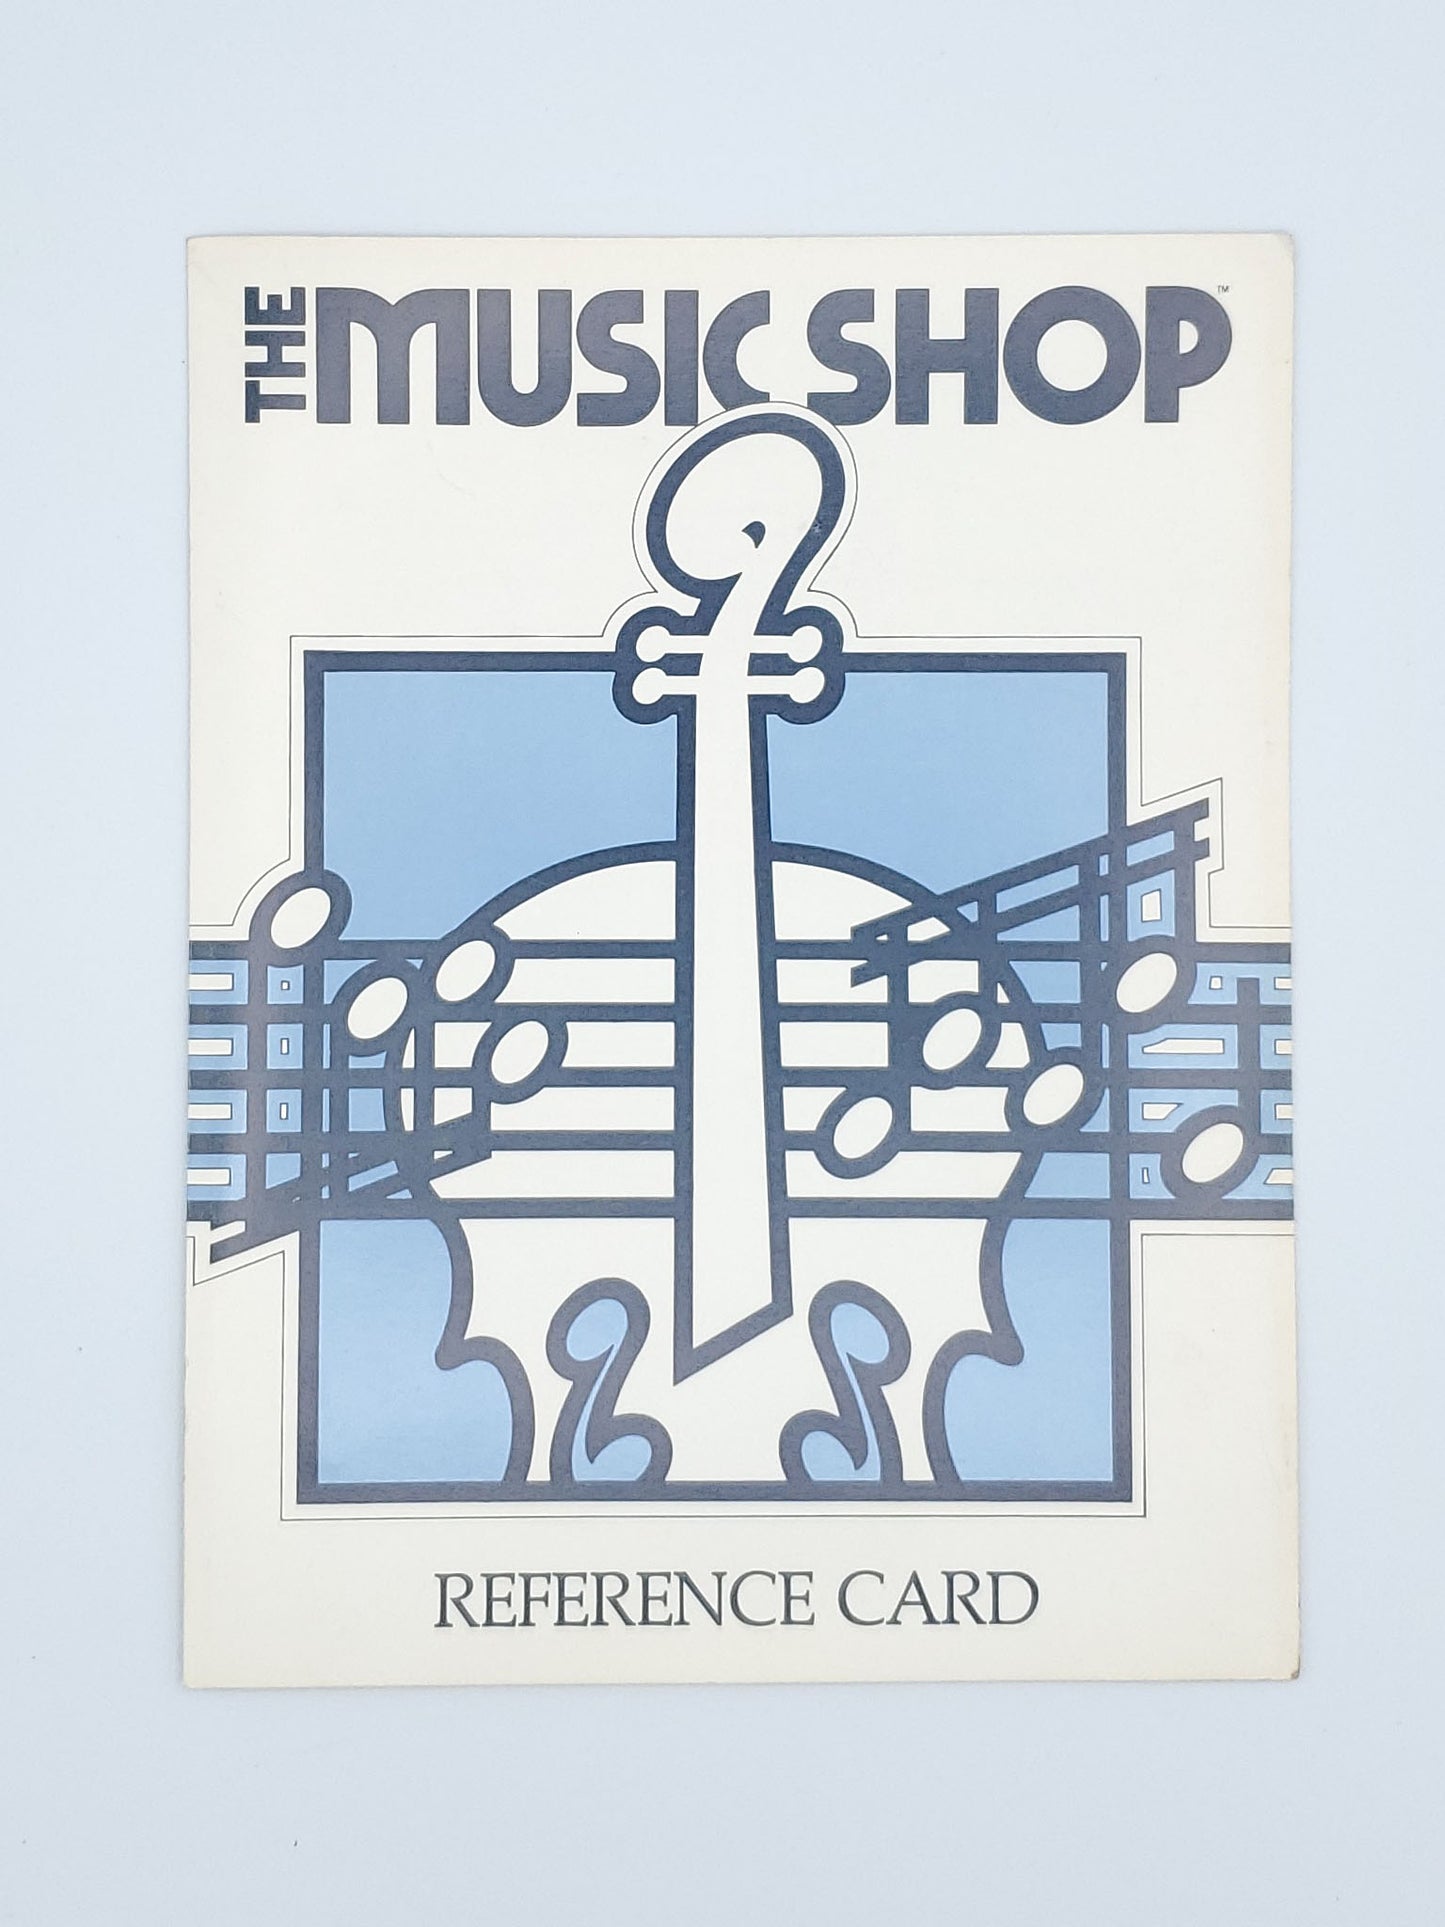 The Music Shop by Br0derbund - Tested